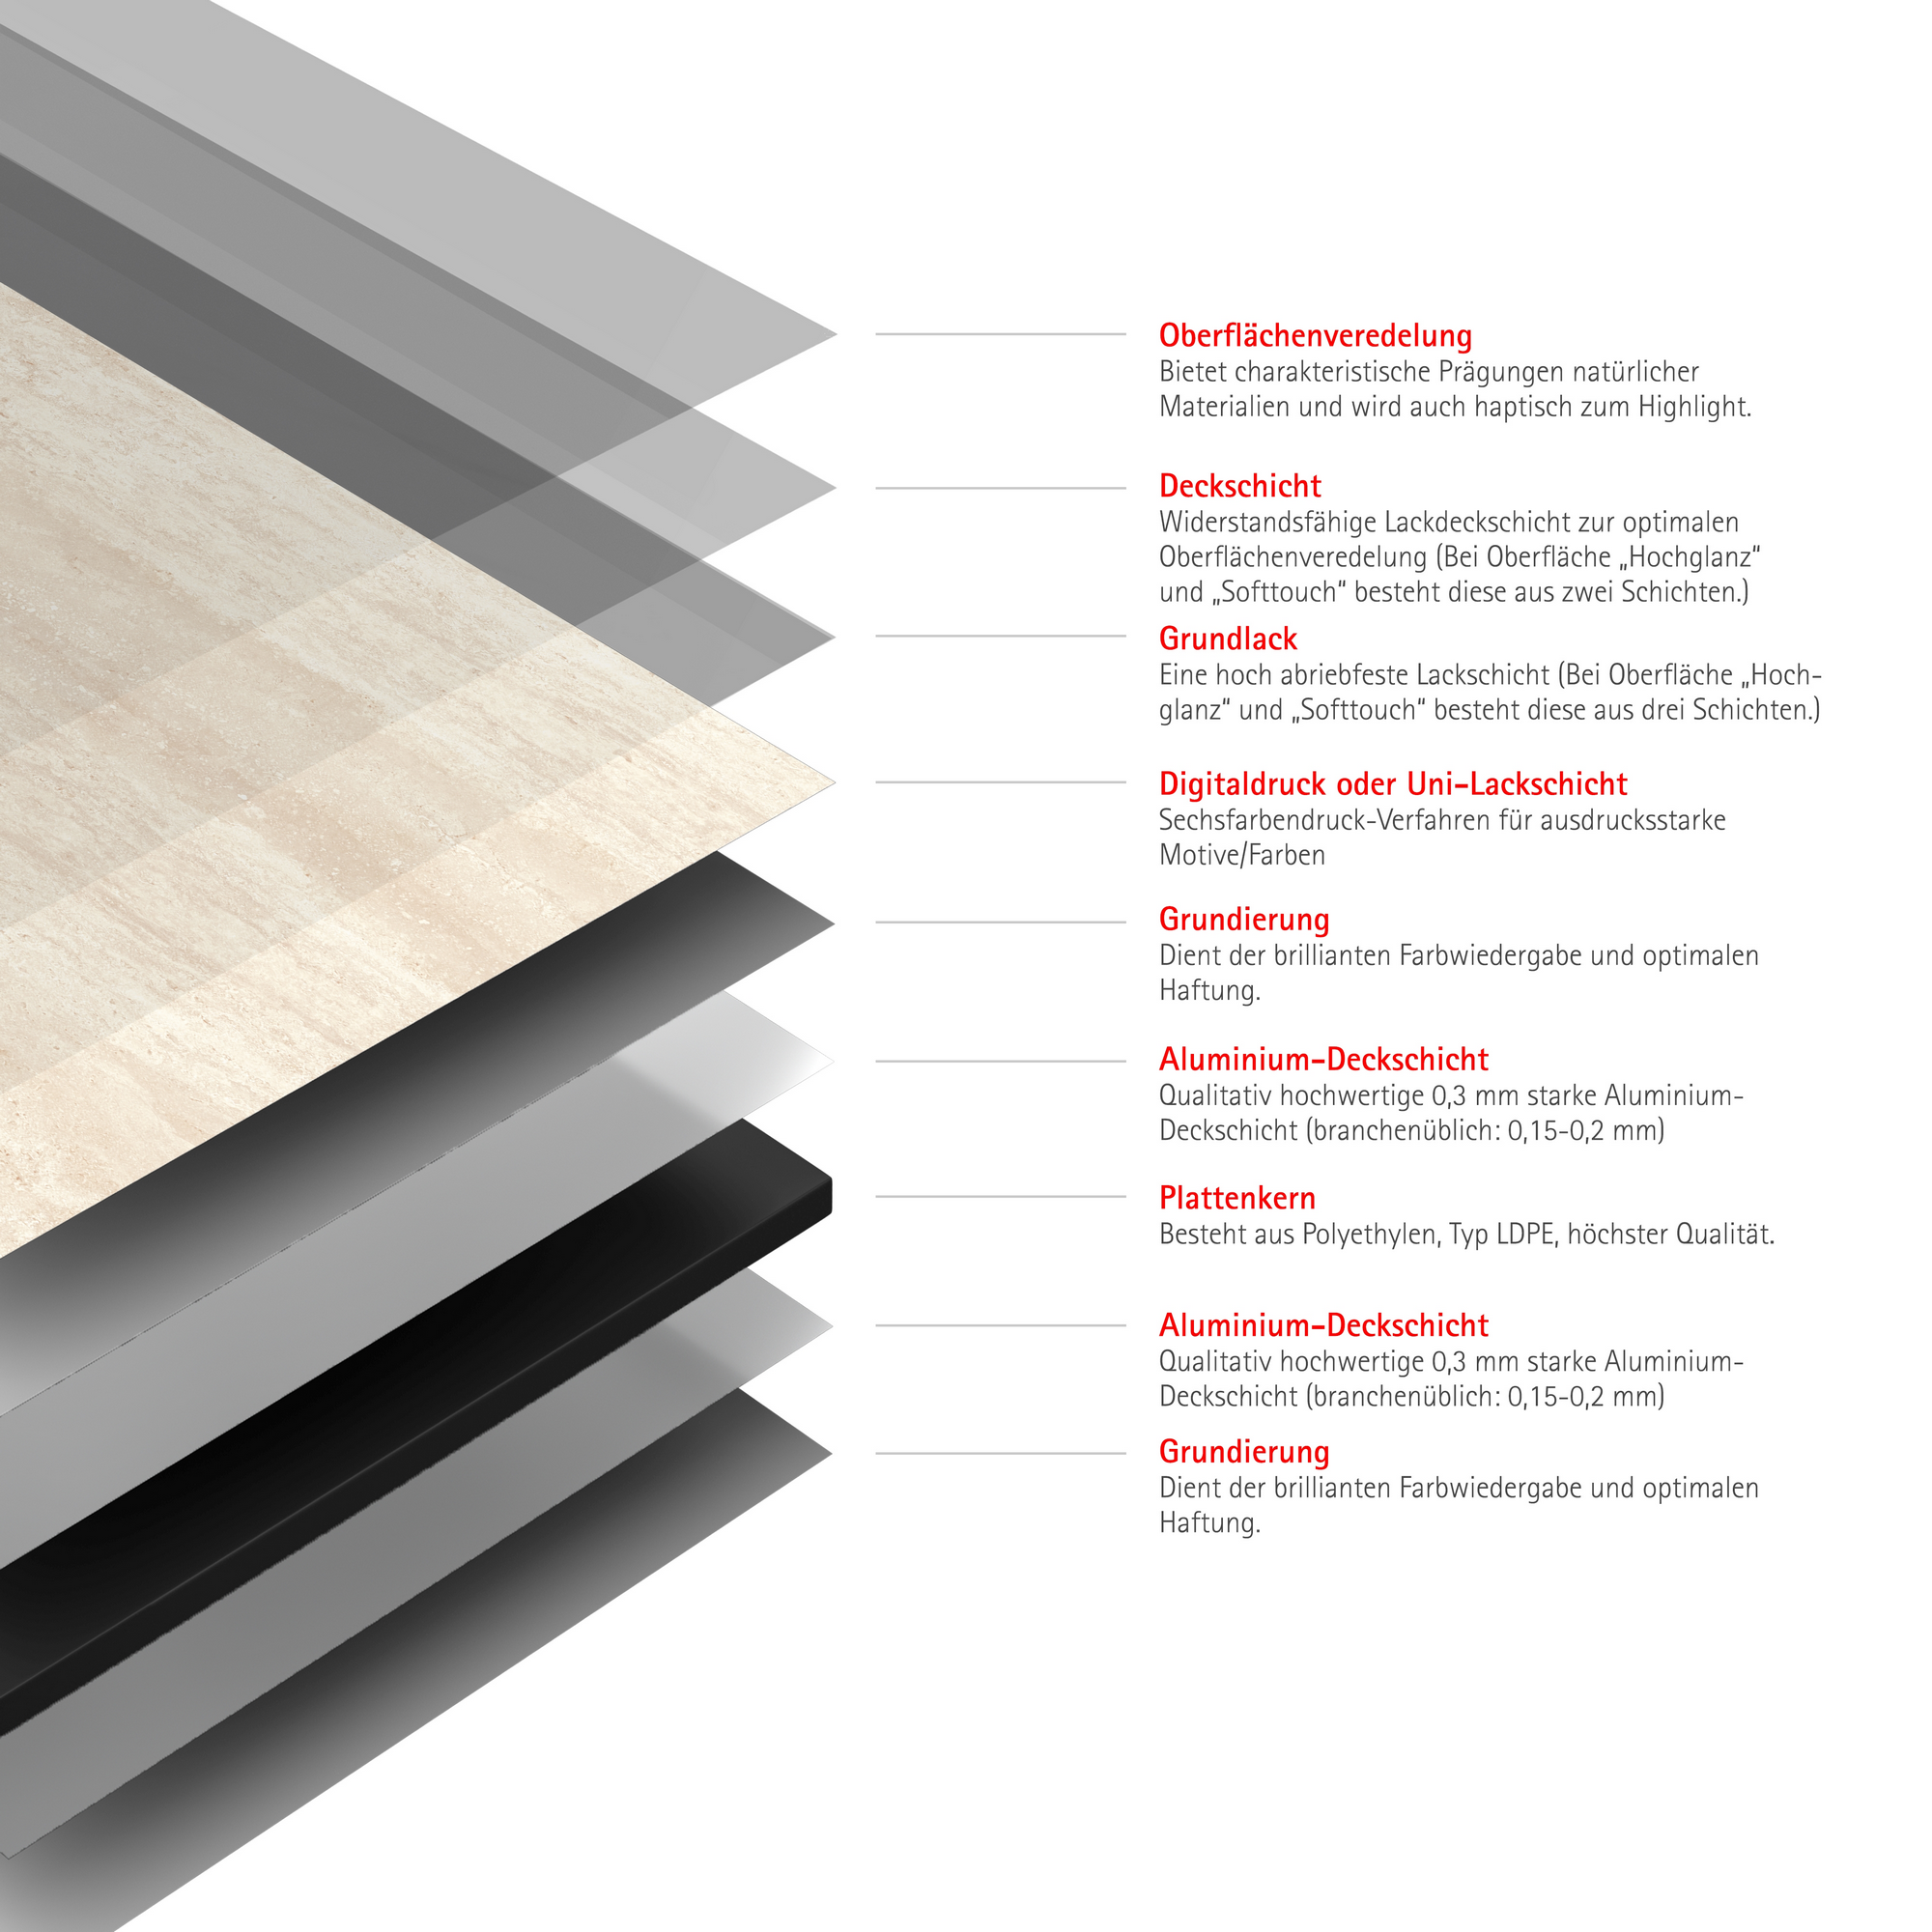 Duschrückwand 'DecoDesign' Softtouch Kalkstein-Beige 100 x 255 cm + product picture